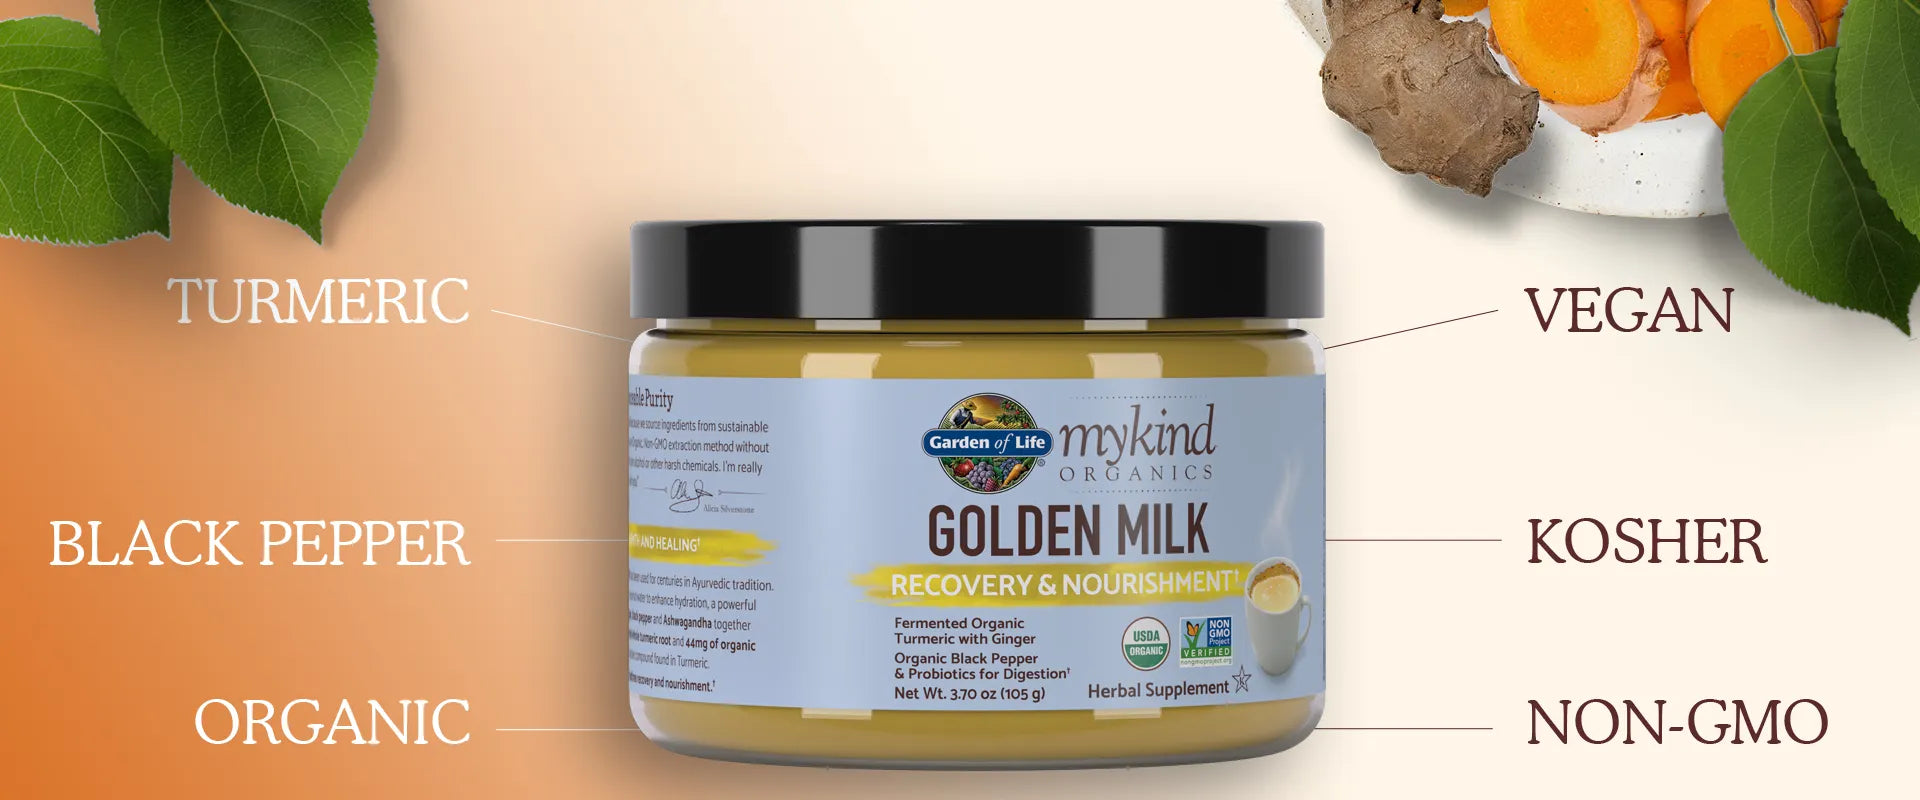 Garden of Life Mykind Organics Golden Milk 105g 30 Servings Footer